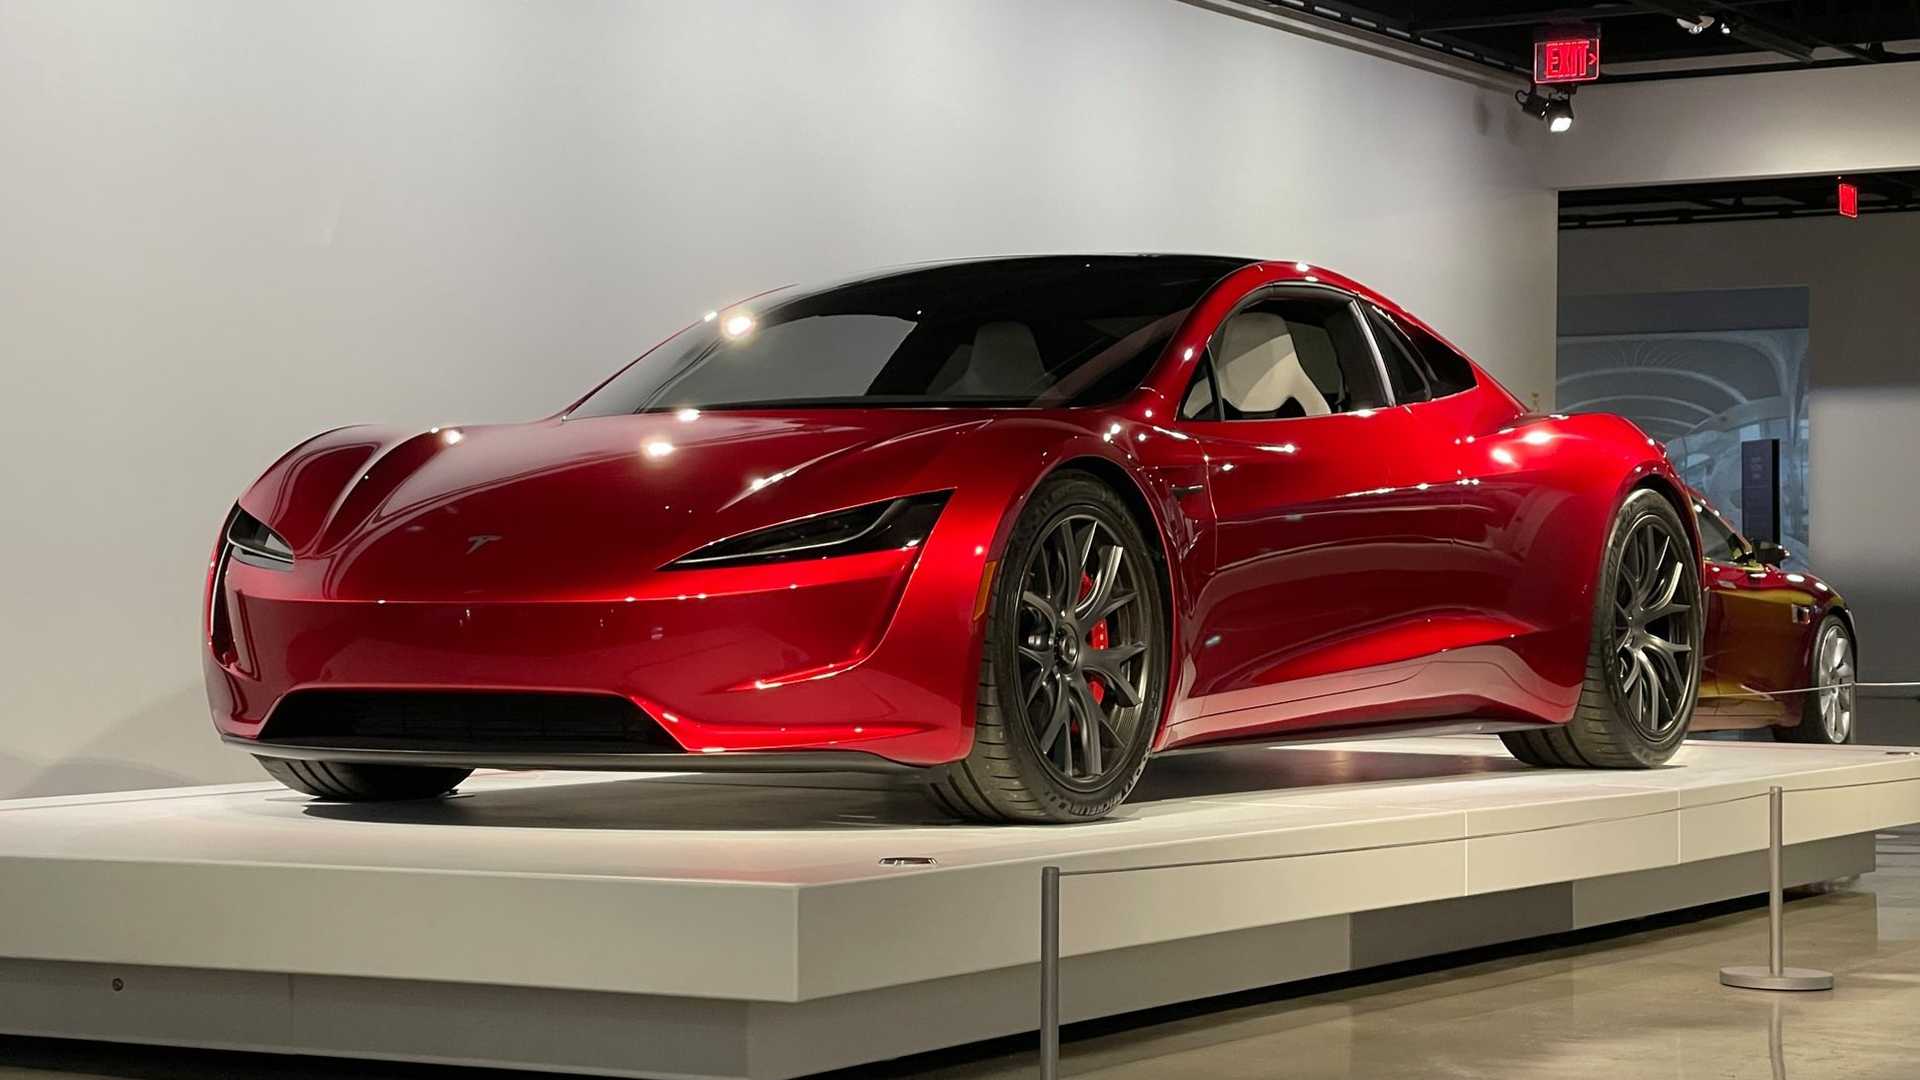 خودروی الکتریکی تسلا رودستر / Tesla Roadster قرمز رنگ در موزه خودرو پترسن